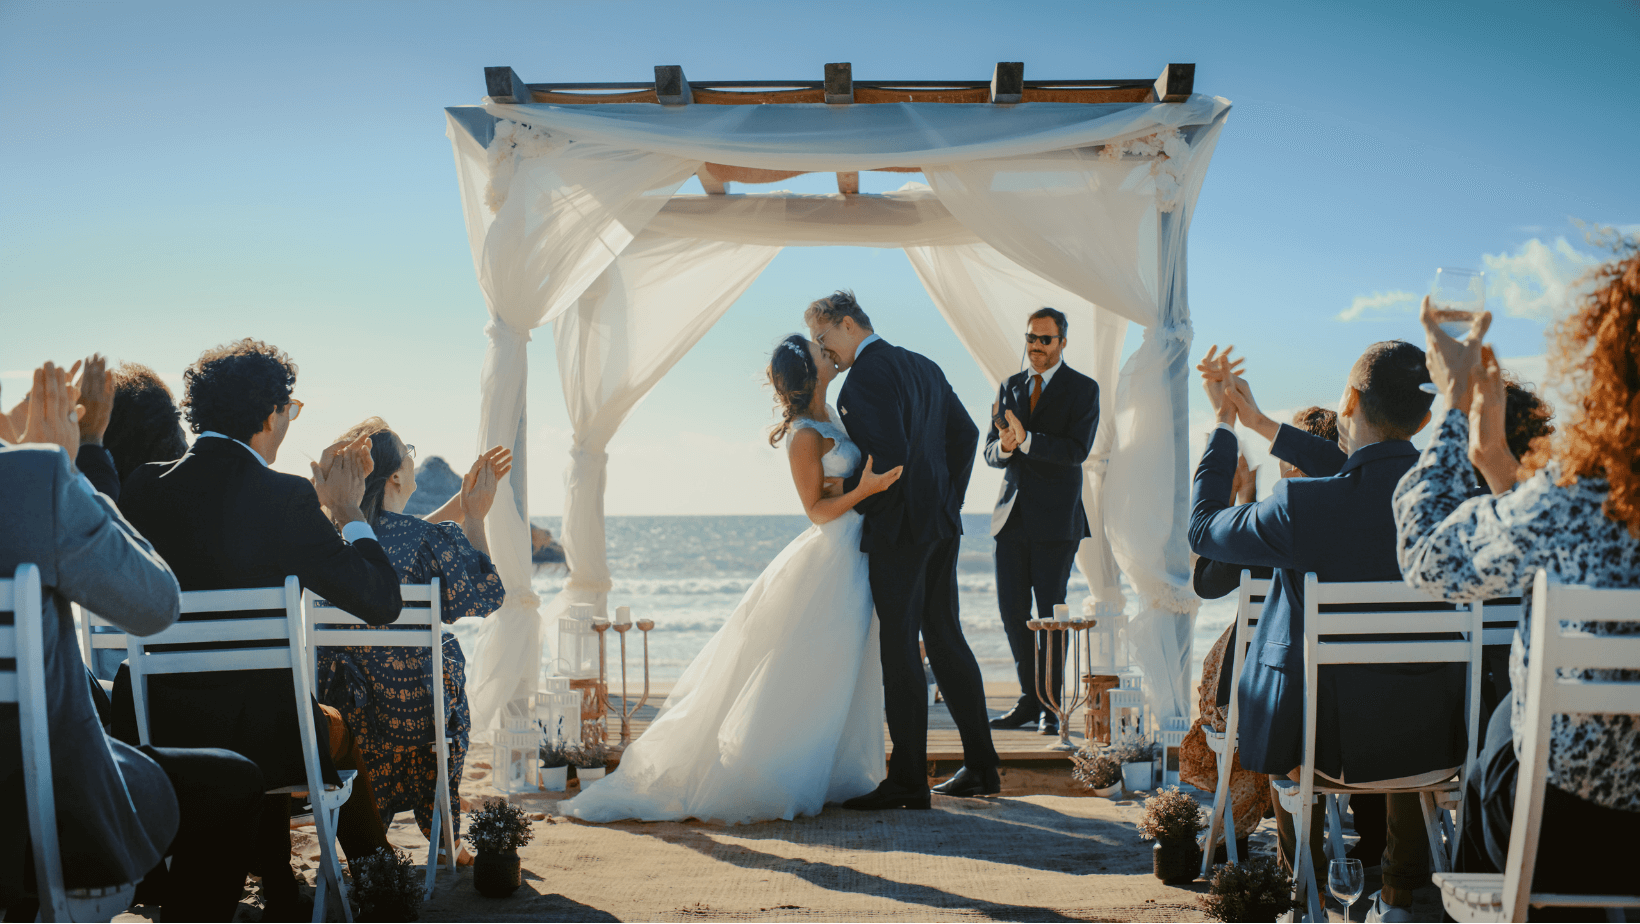 Matrimoni in spiaggia a San Teodoro: ecco le location